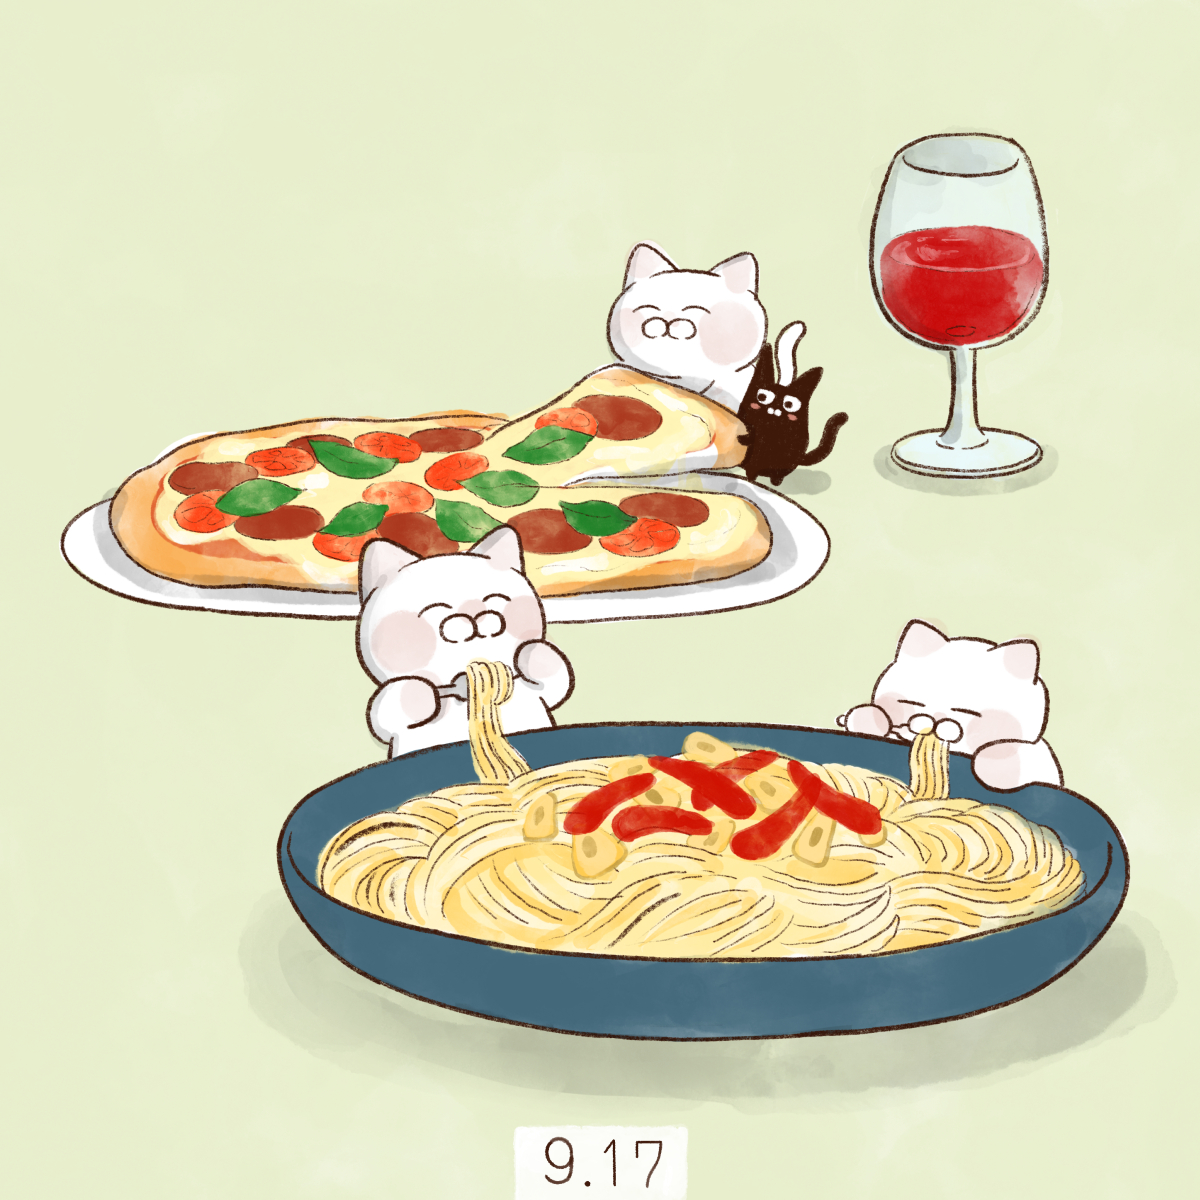 「9月17日【イタリア料理の日】 イタリア語で「料理」を意味する「クチーナ(CUC」|大和猫のイラスト